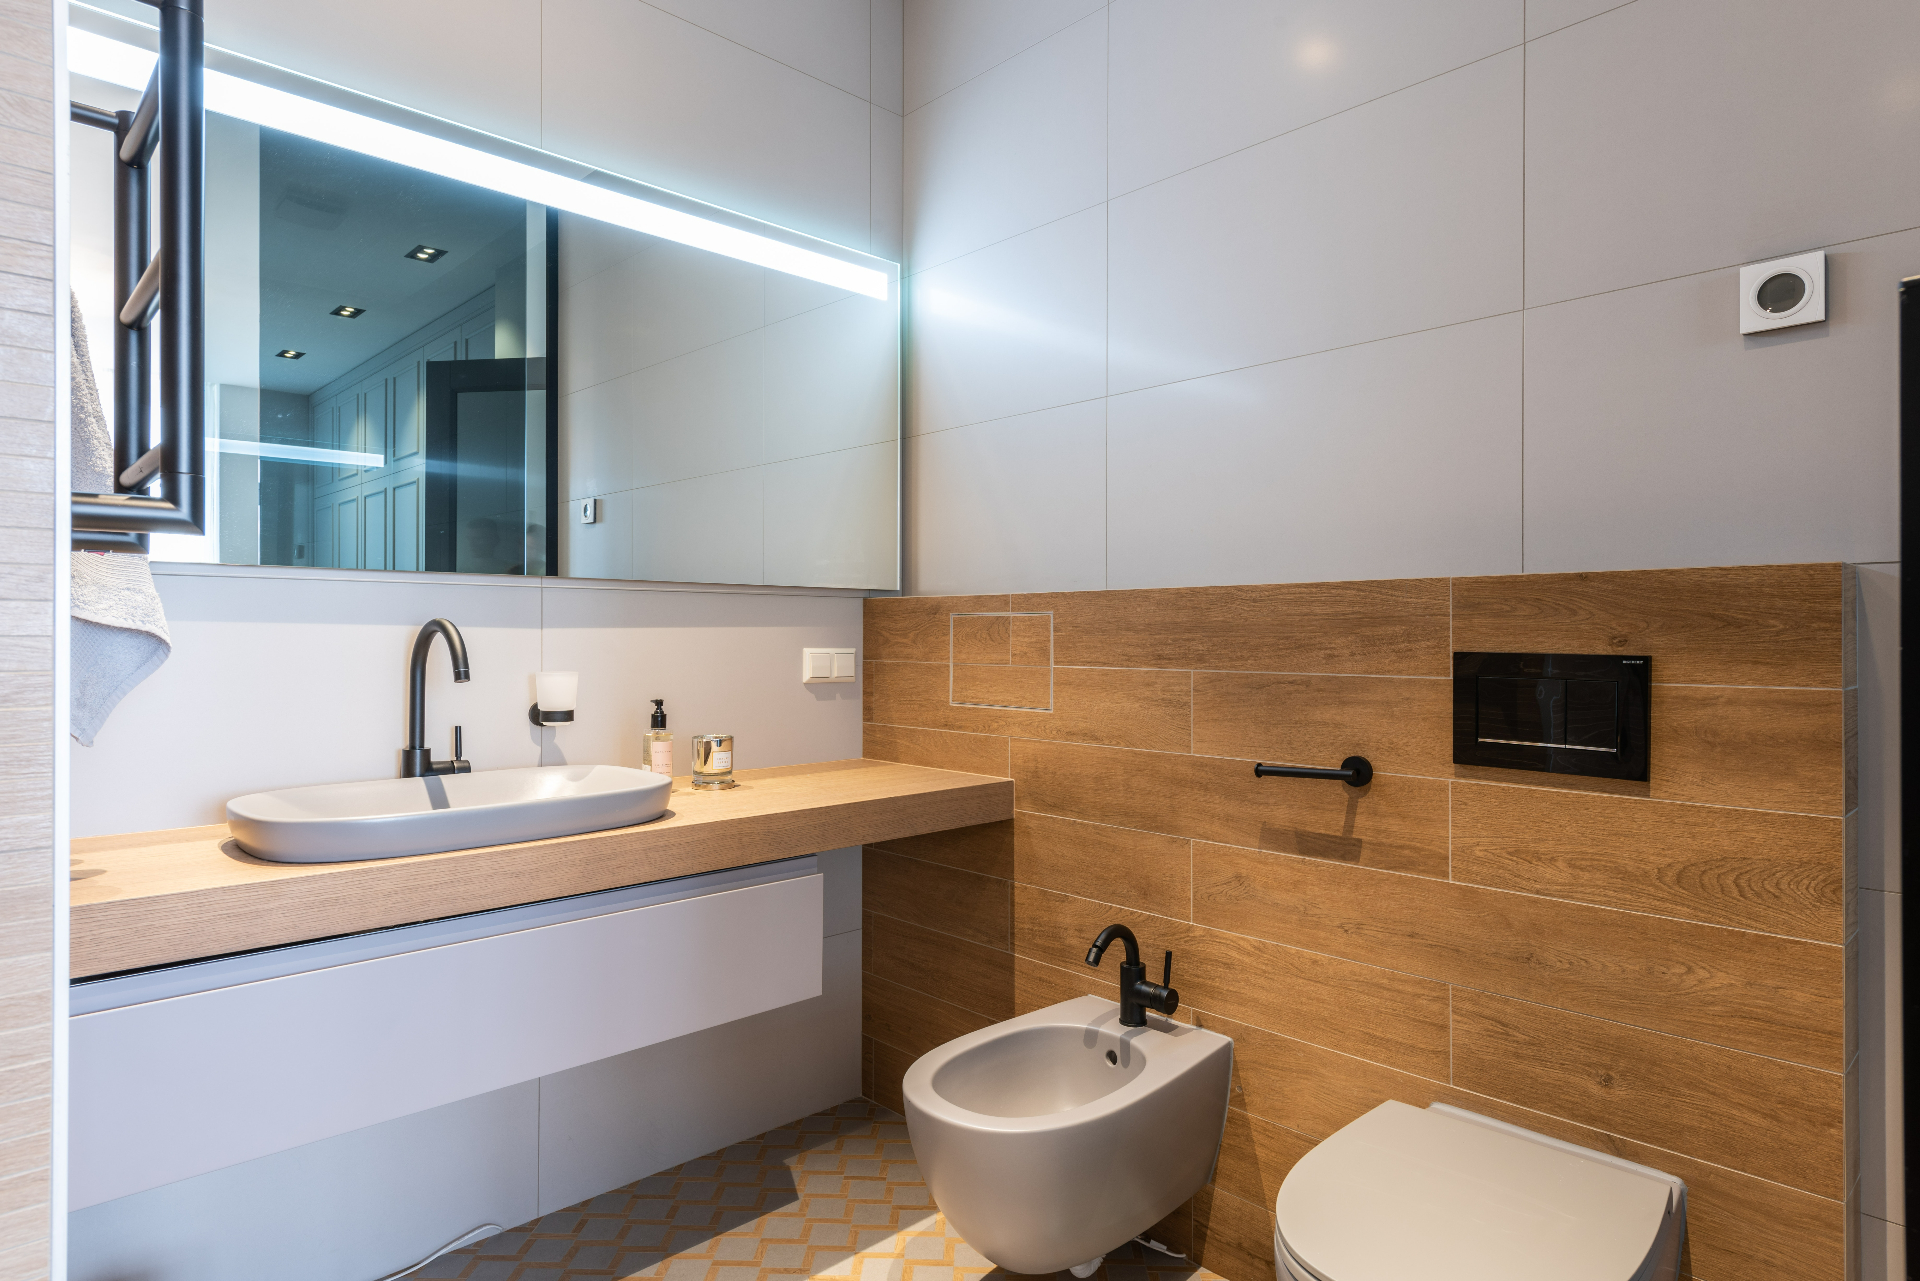 Плитка в дизайне ванной комнаты: стильные идеи